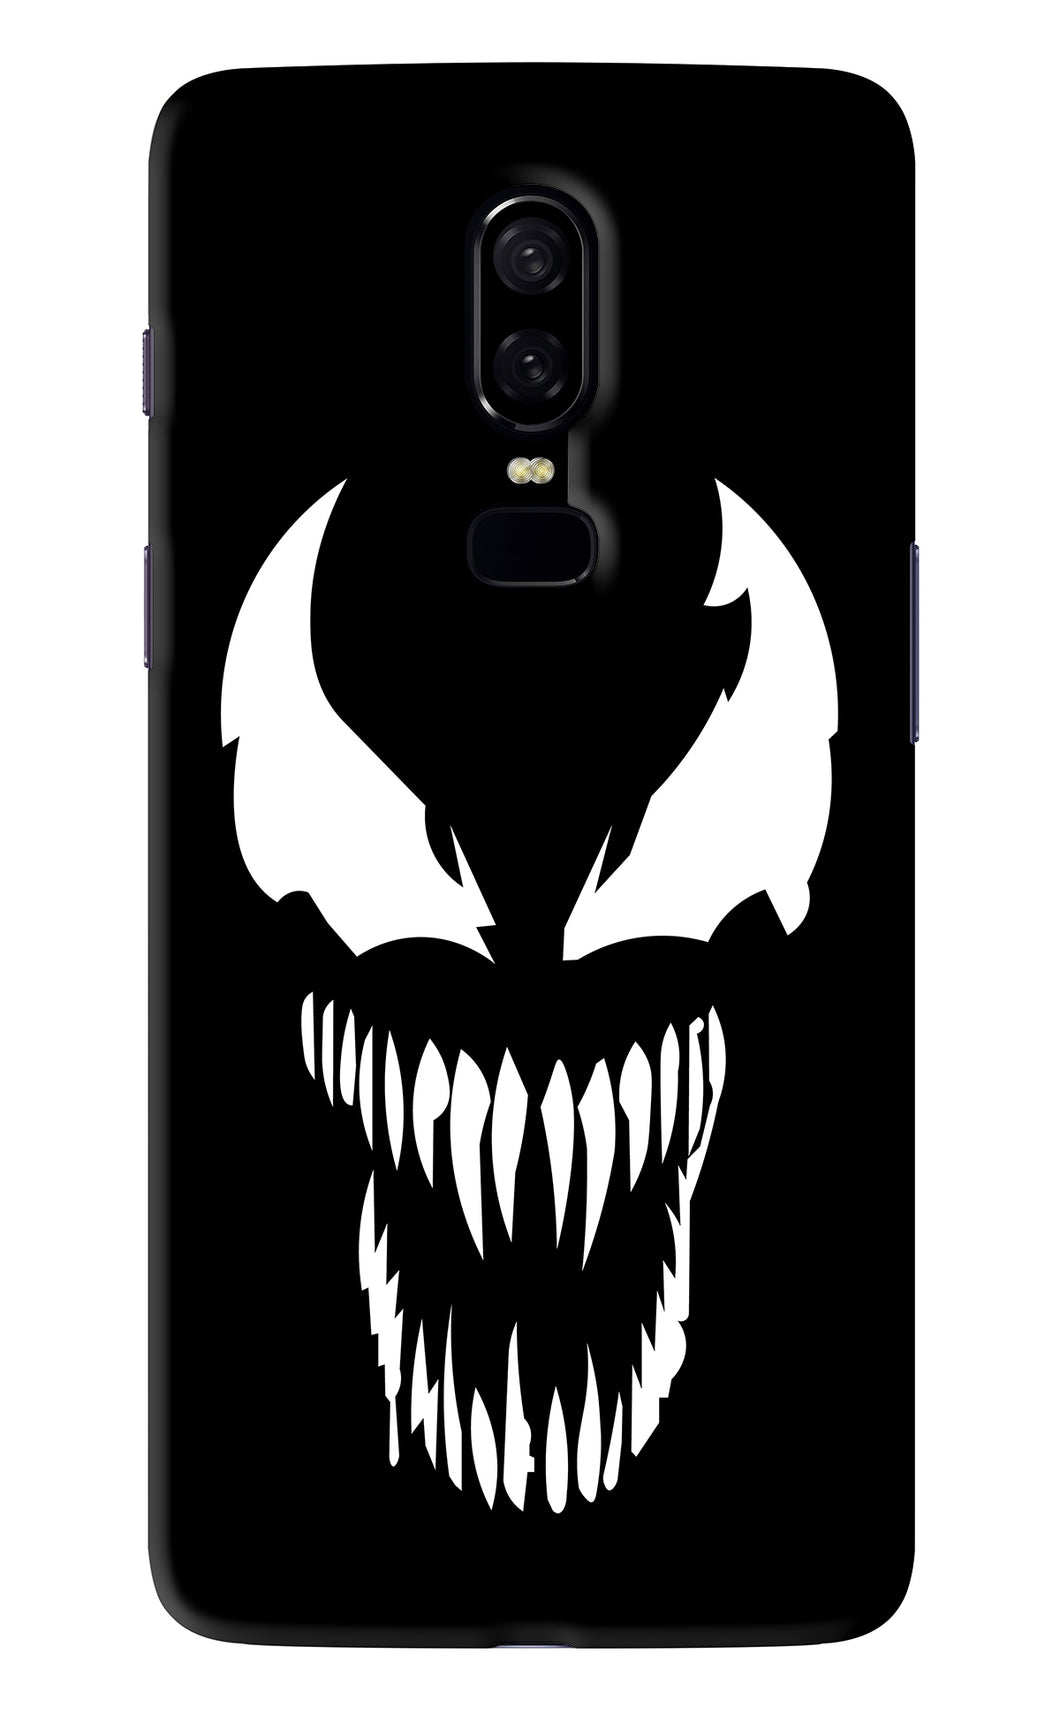 Venom OnePlus 6 Back Skin Wrap